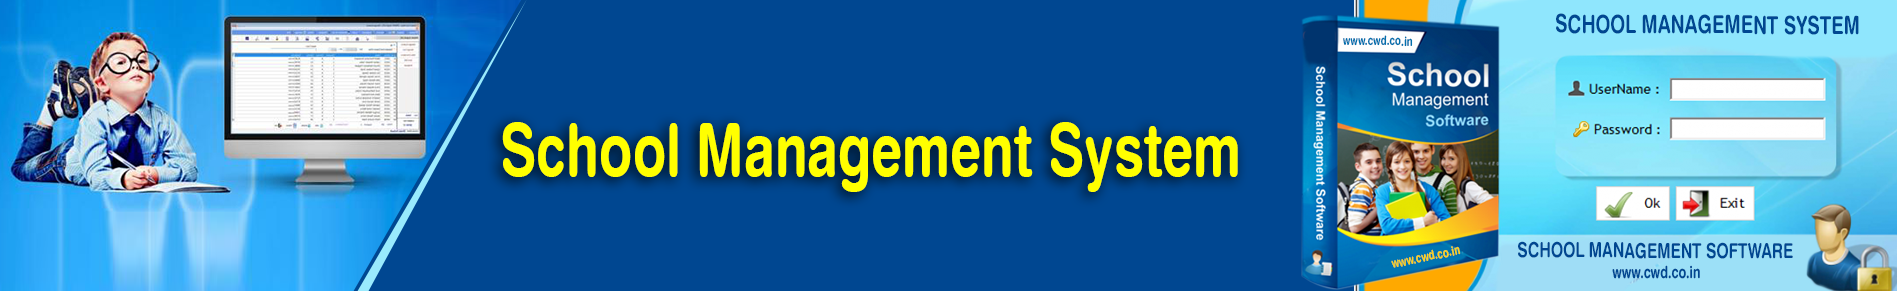 School Management System in Chennai | Online School Management Software in Chennai - cwd.co.in